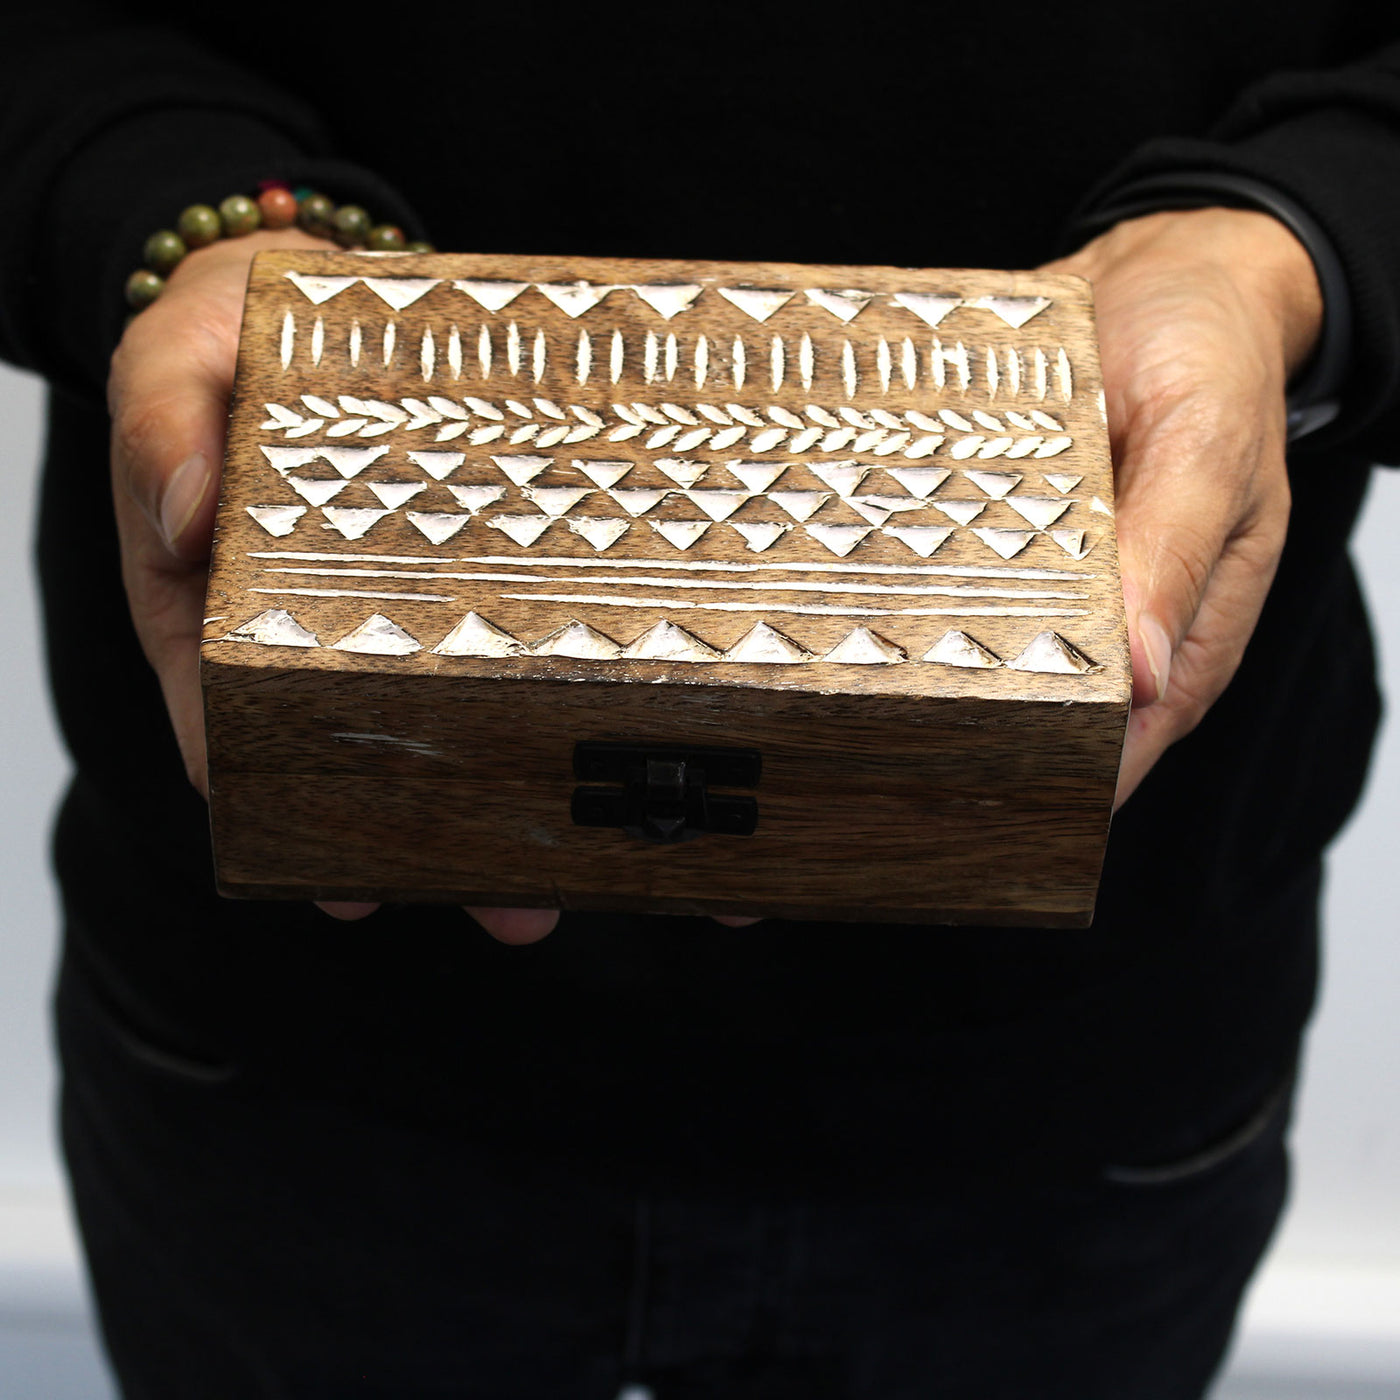 White Washed Wooden Storage Box - Aztec Design 6 x 4 Inch. 